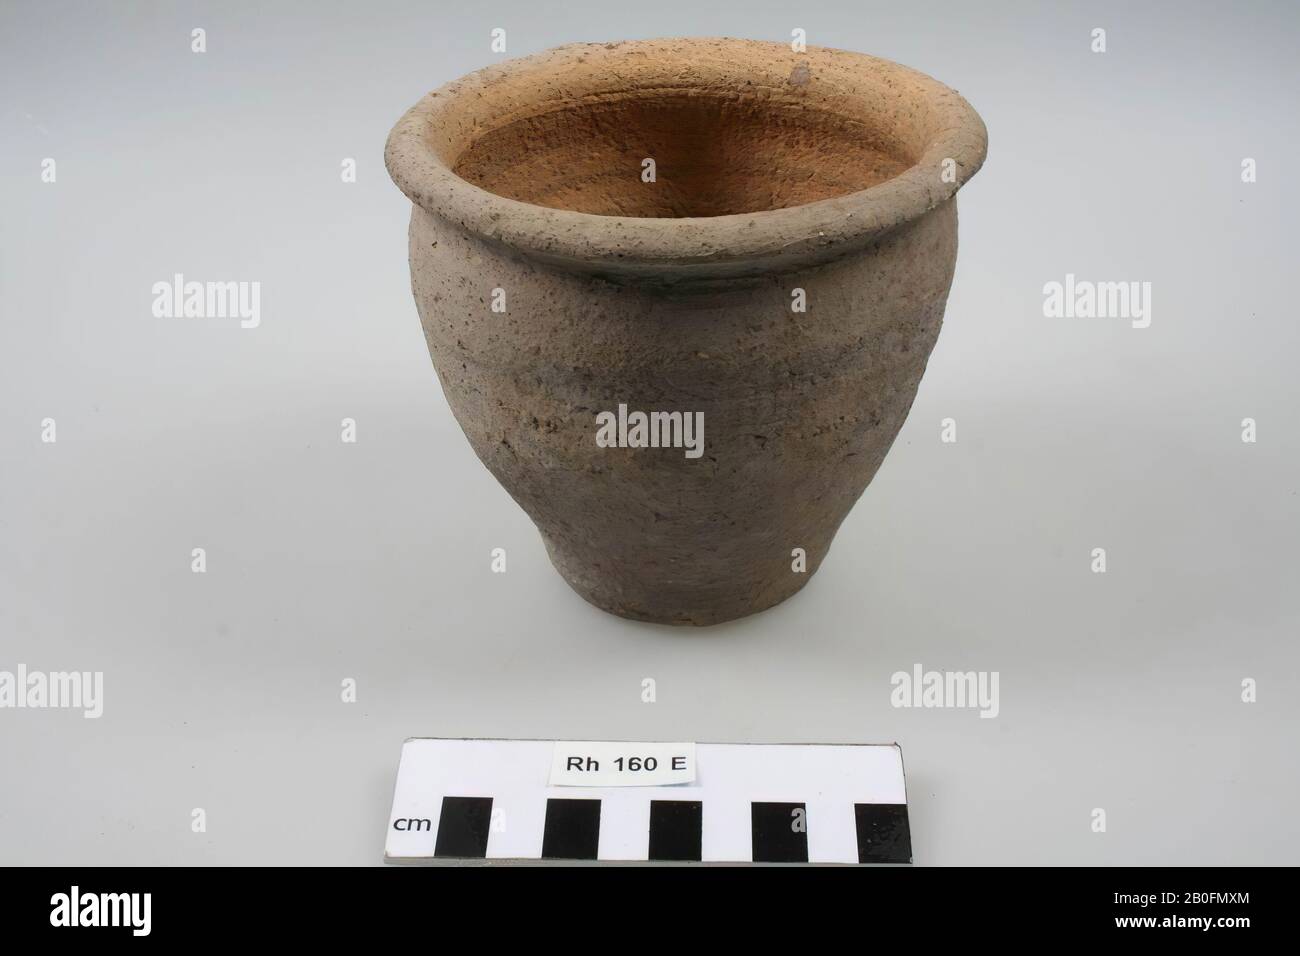 Lampion pot of rough-walled earthenware, lampion pot, earthenware (rough walled), h: 11.4 cm, diam: 13 cm, vmeb 525-600, Netherlands, Utrecht, Rhenen, Rhenen, grave 160 Stock Photo